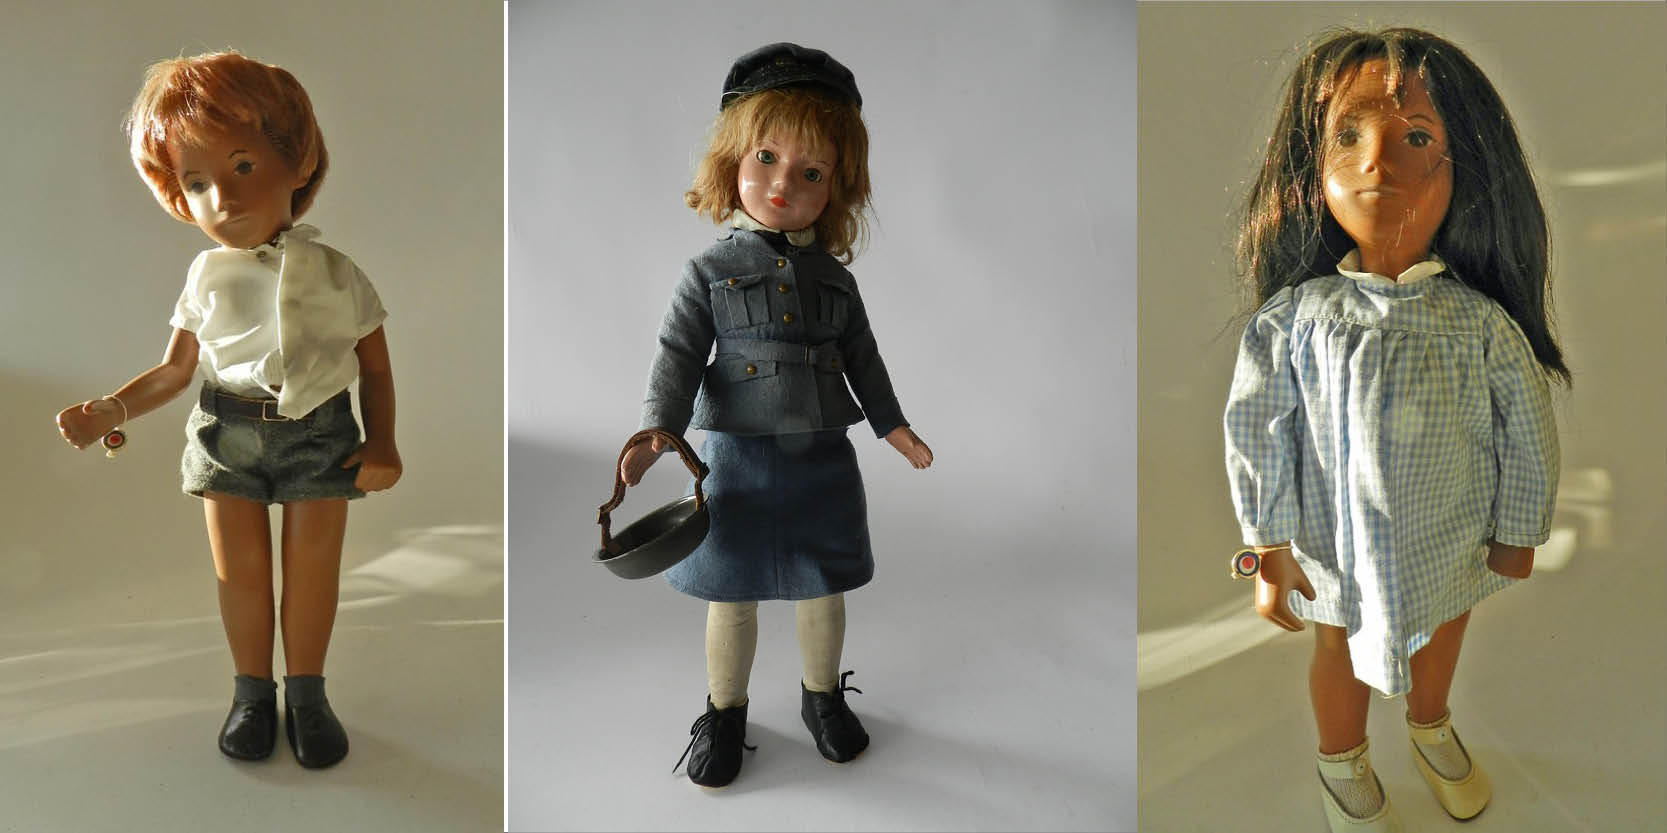 Small collection of Sasha dolls sells 